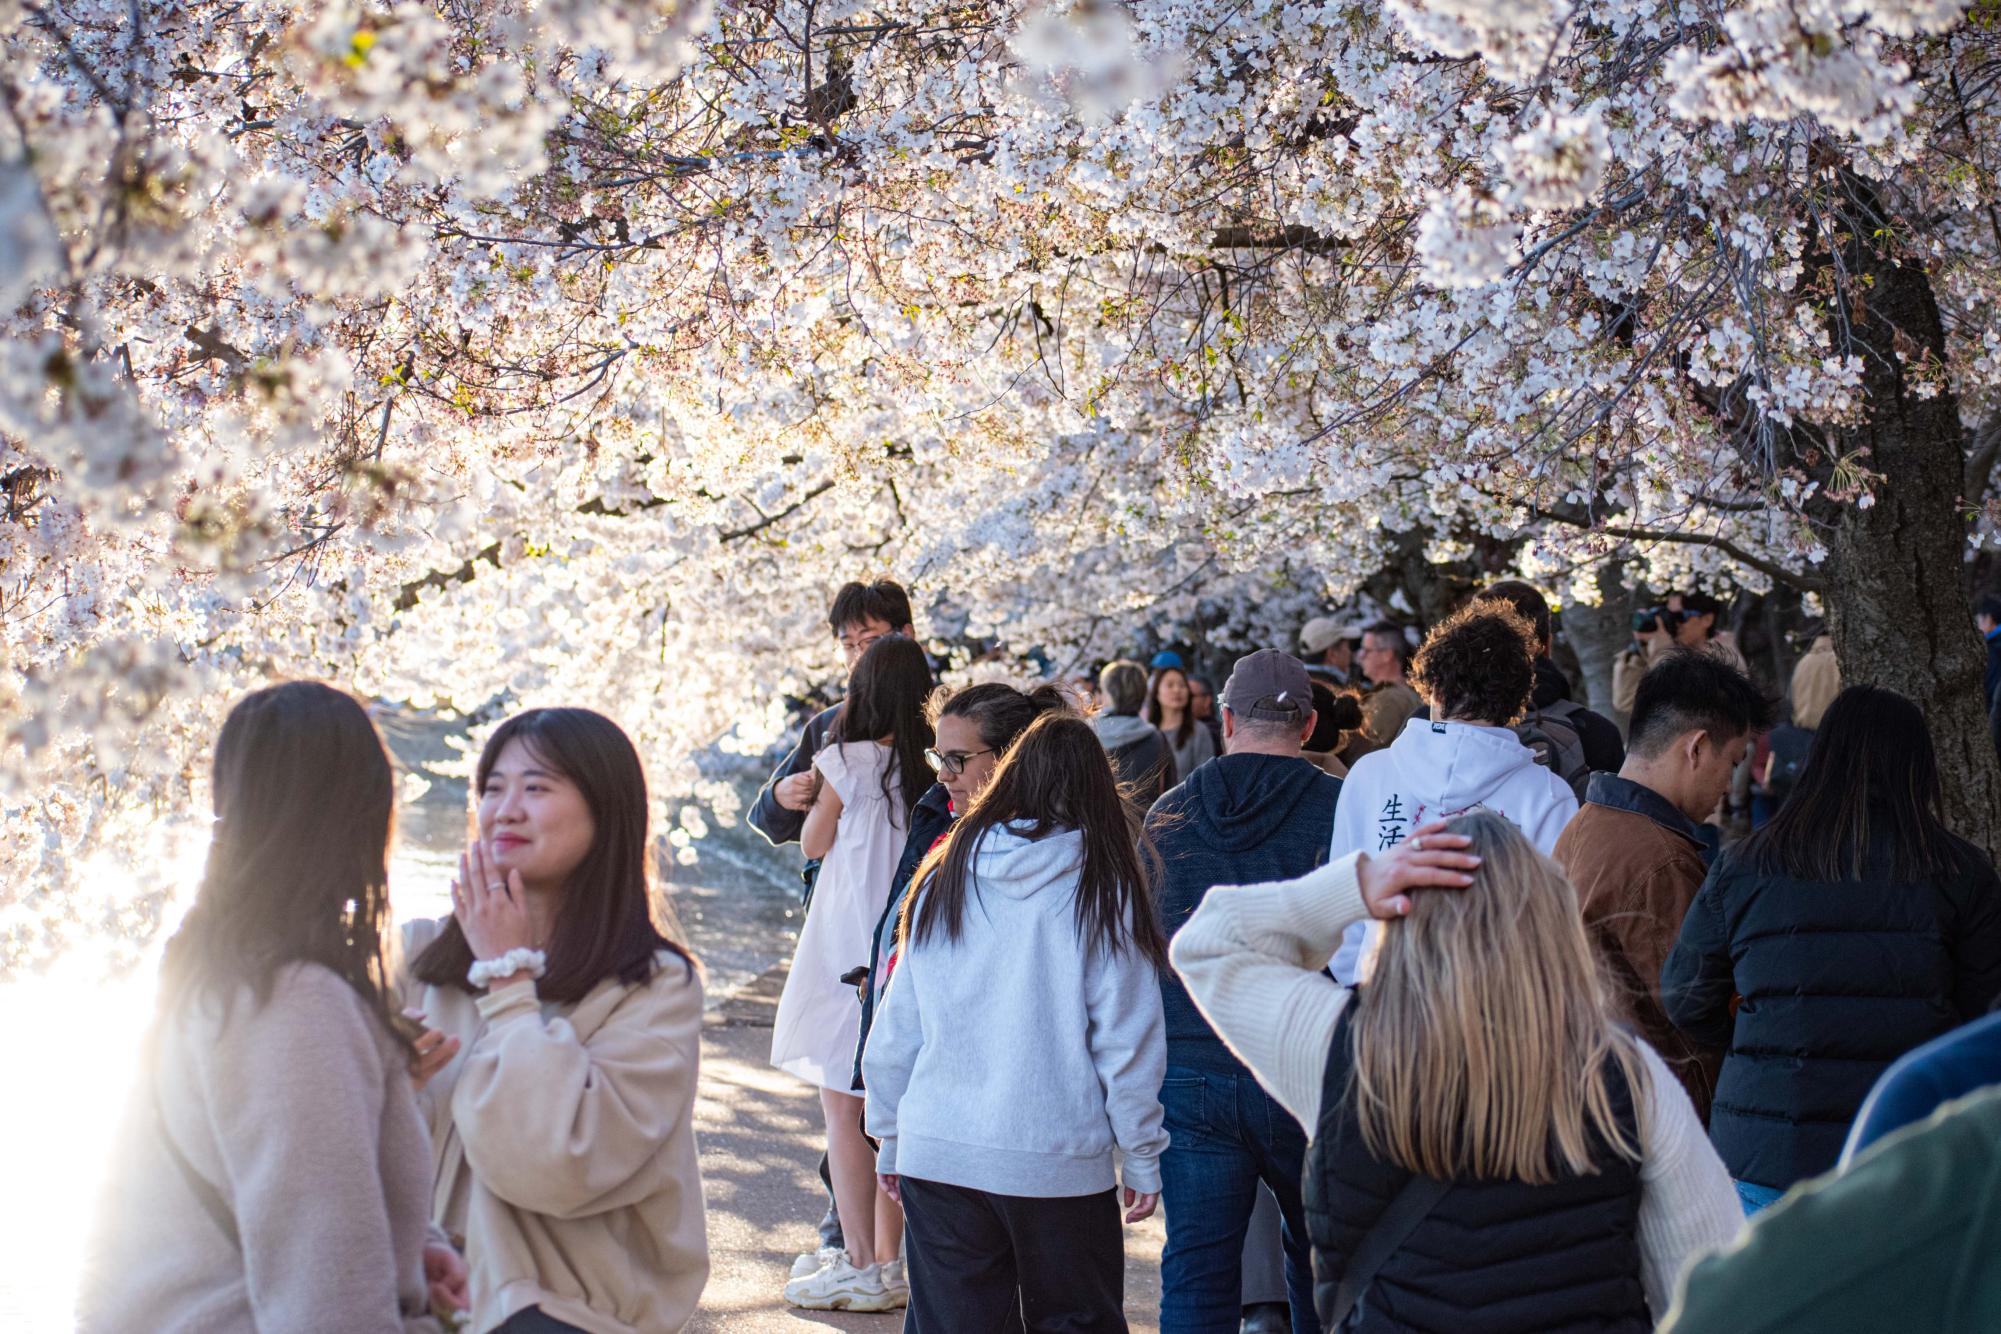 Photo Essay: Cherry Blossom Festival